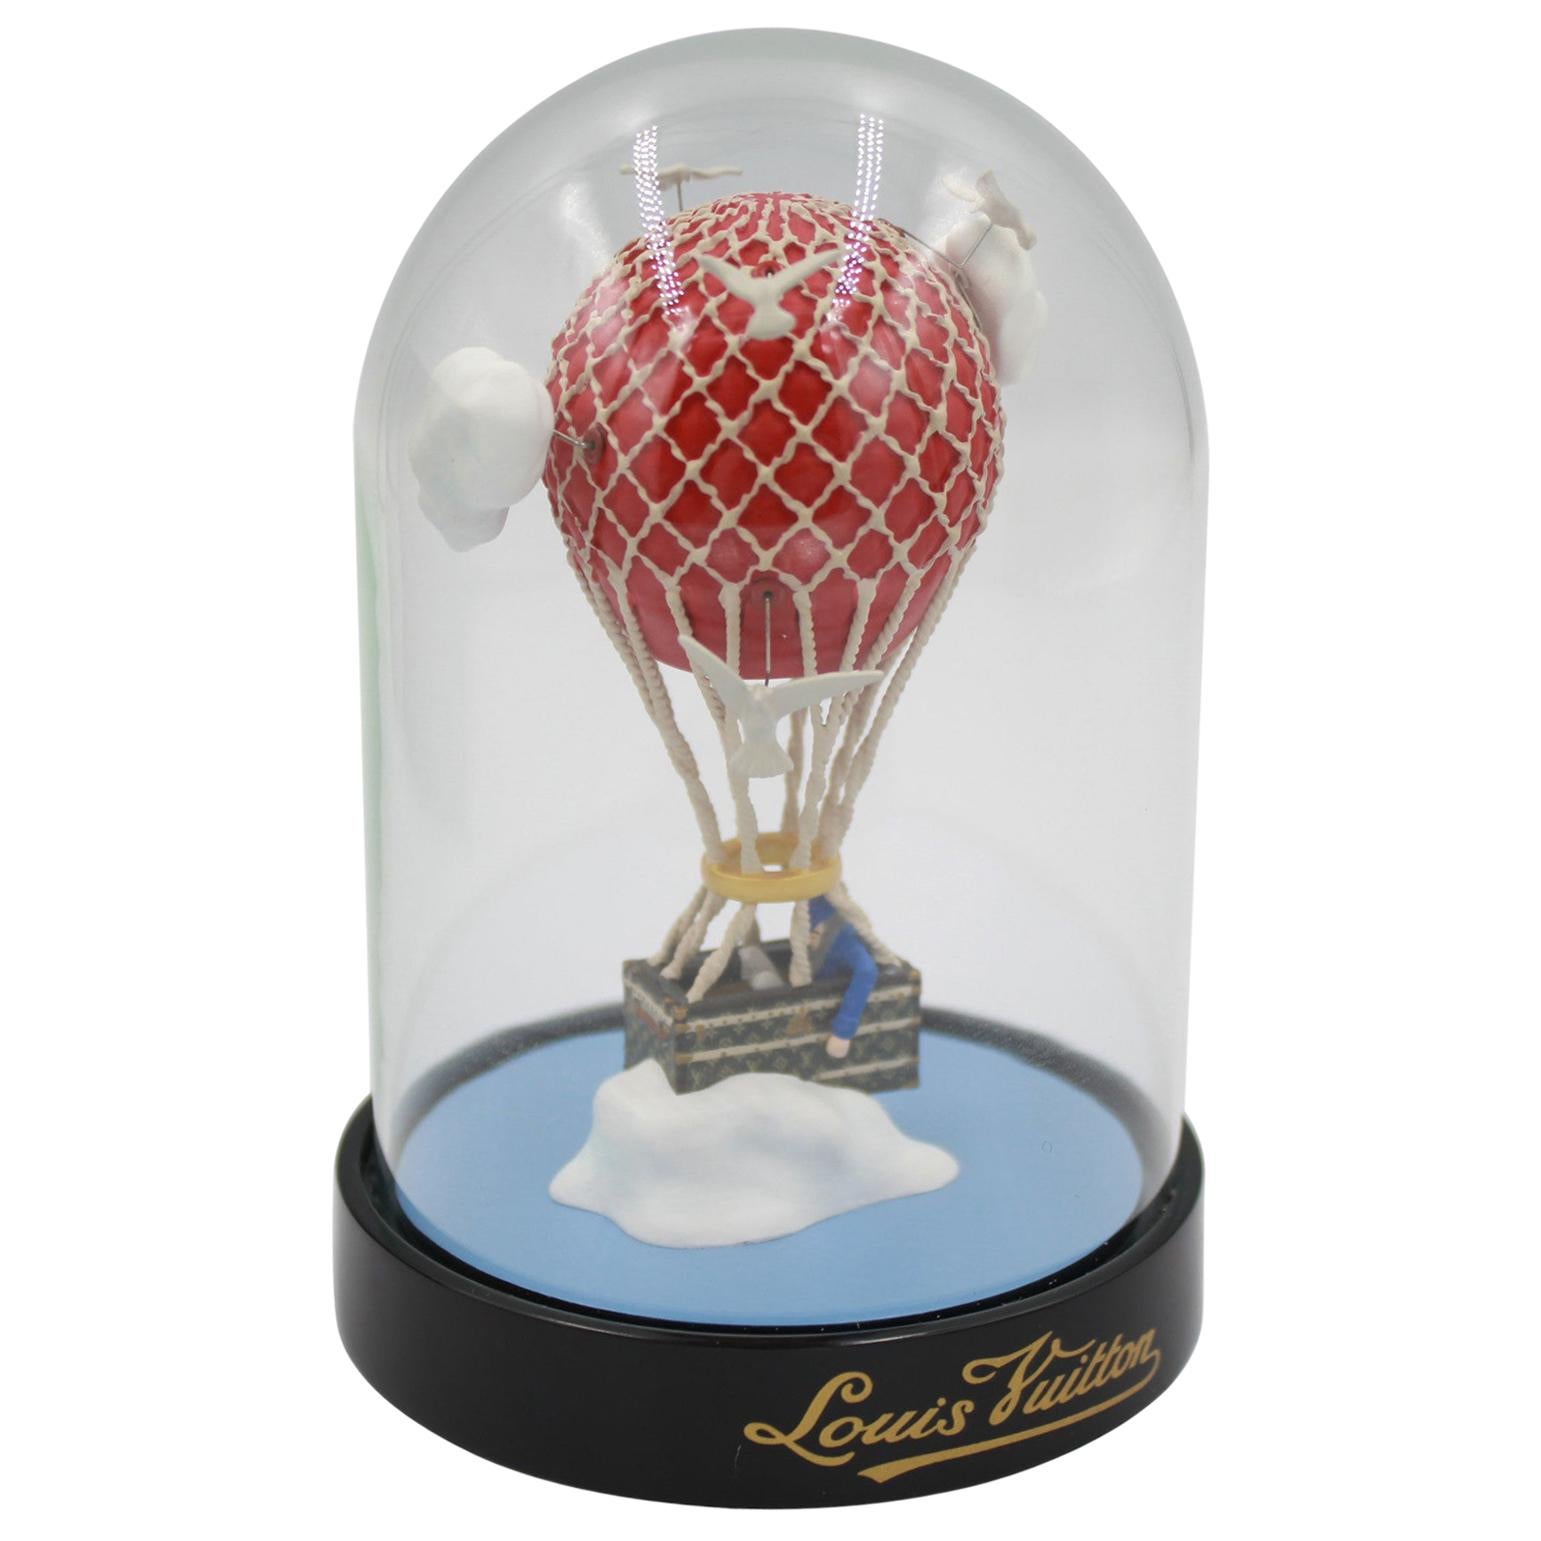 Collectible Louis Vuitton hot air balloon dome For Sale